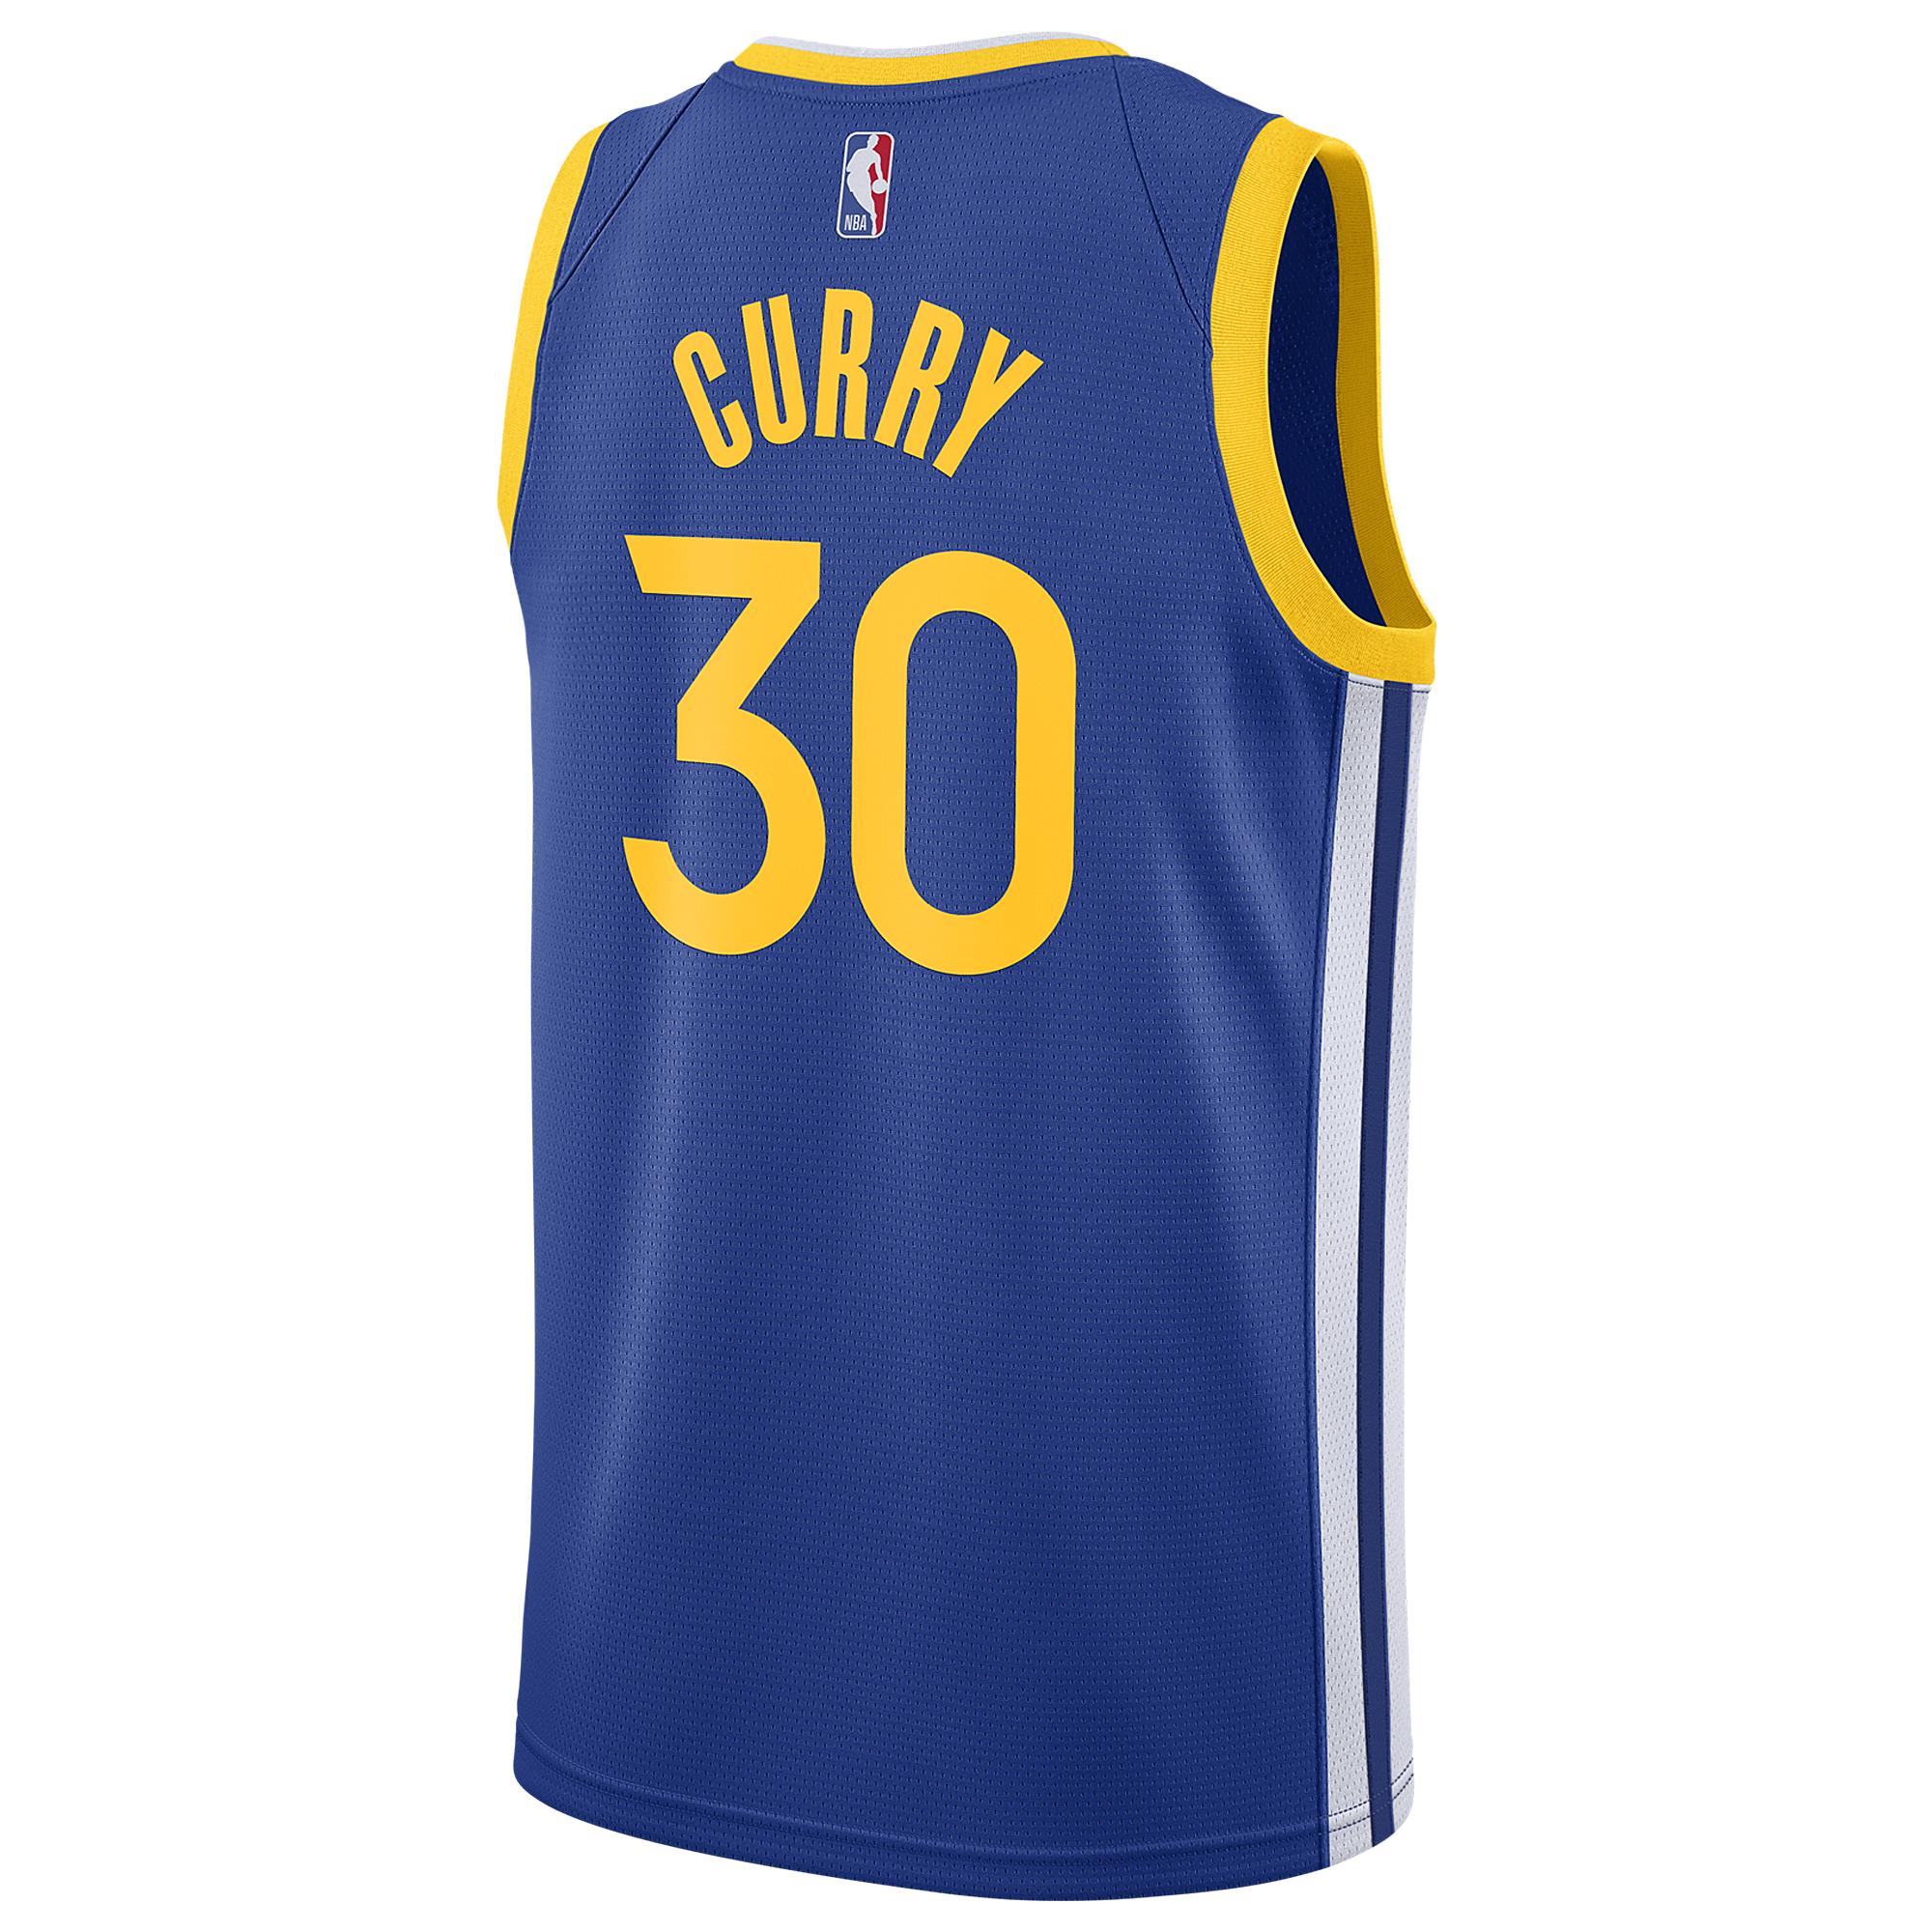 Nike Cotton Stephen Curry Nba Swingman Jersey in Blue for Men - Lyst